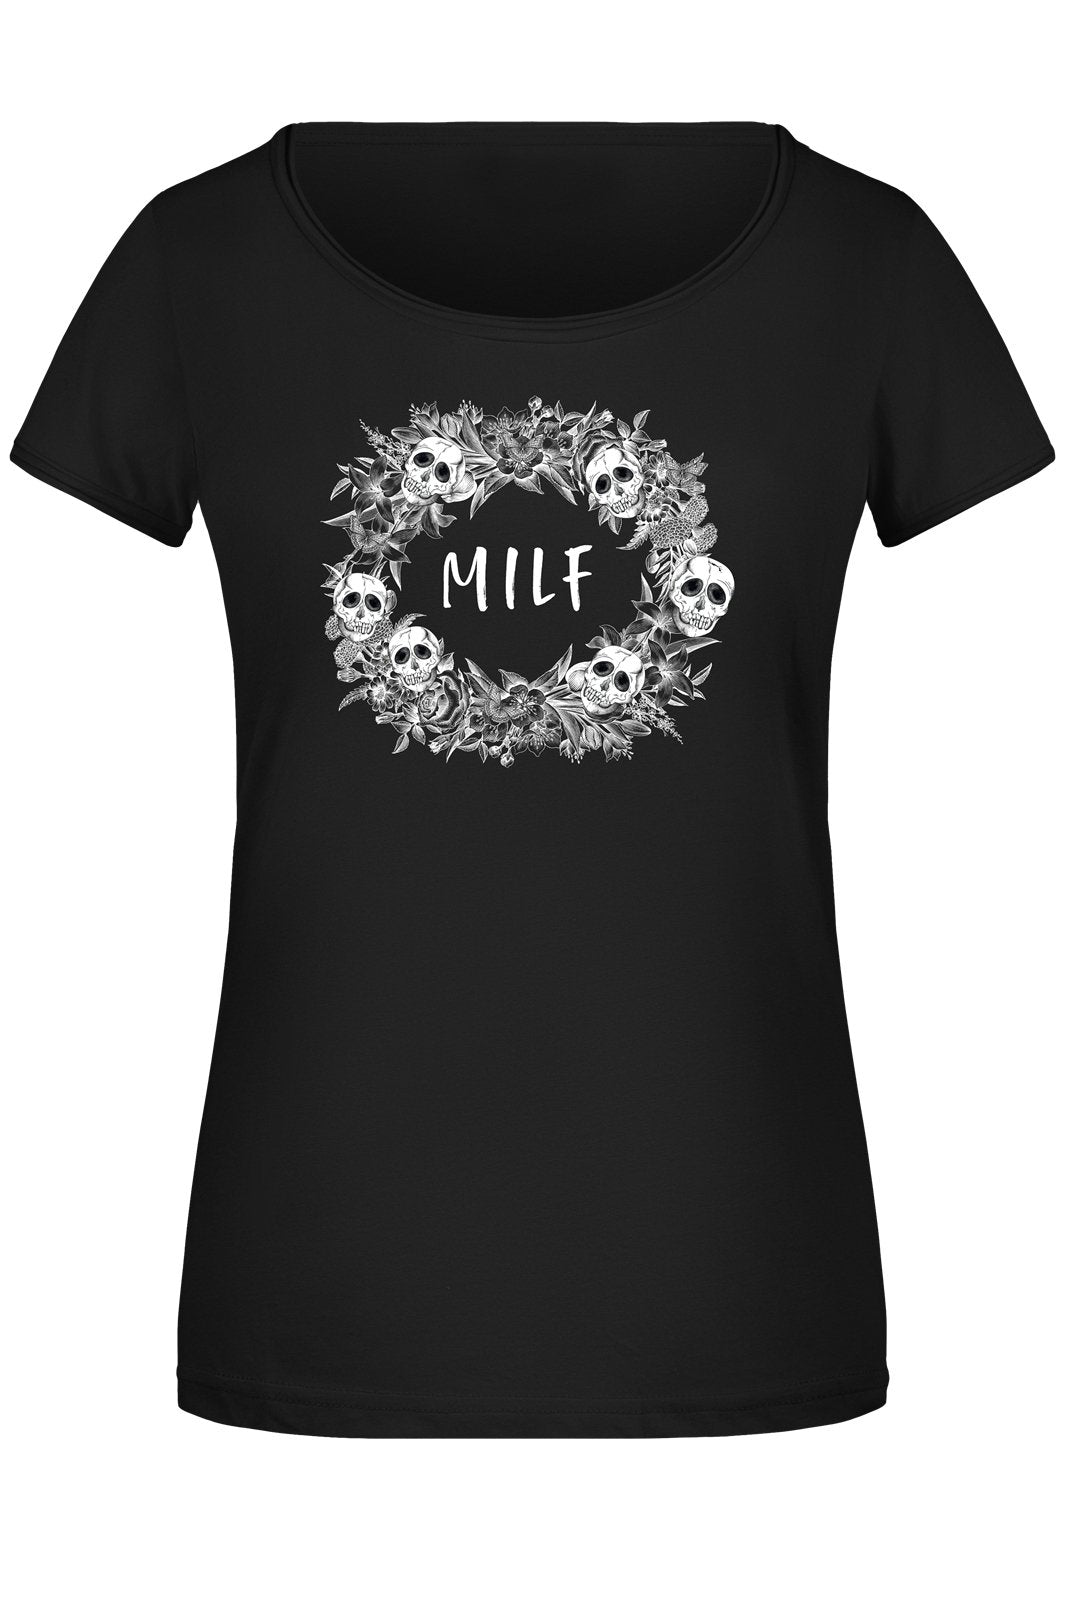 Bild: T-Shirt Damen - Milf - Skull Statement Geschenkidee